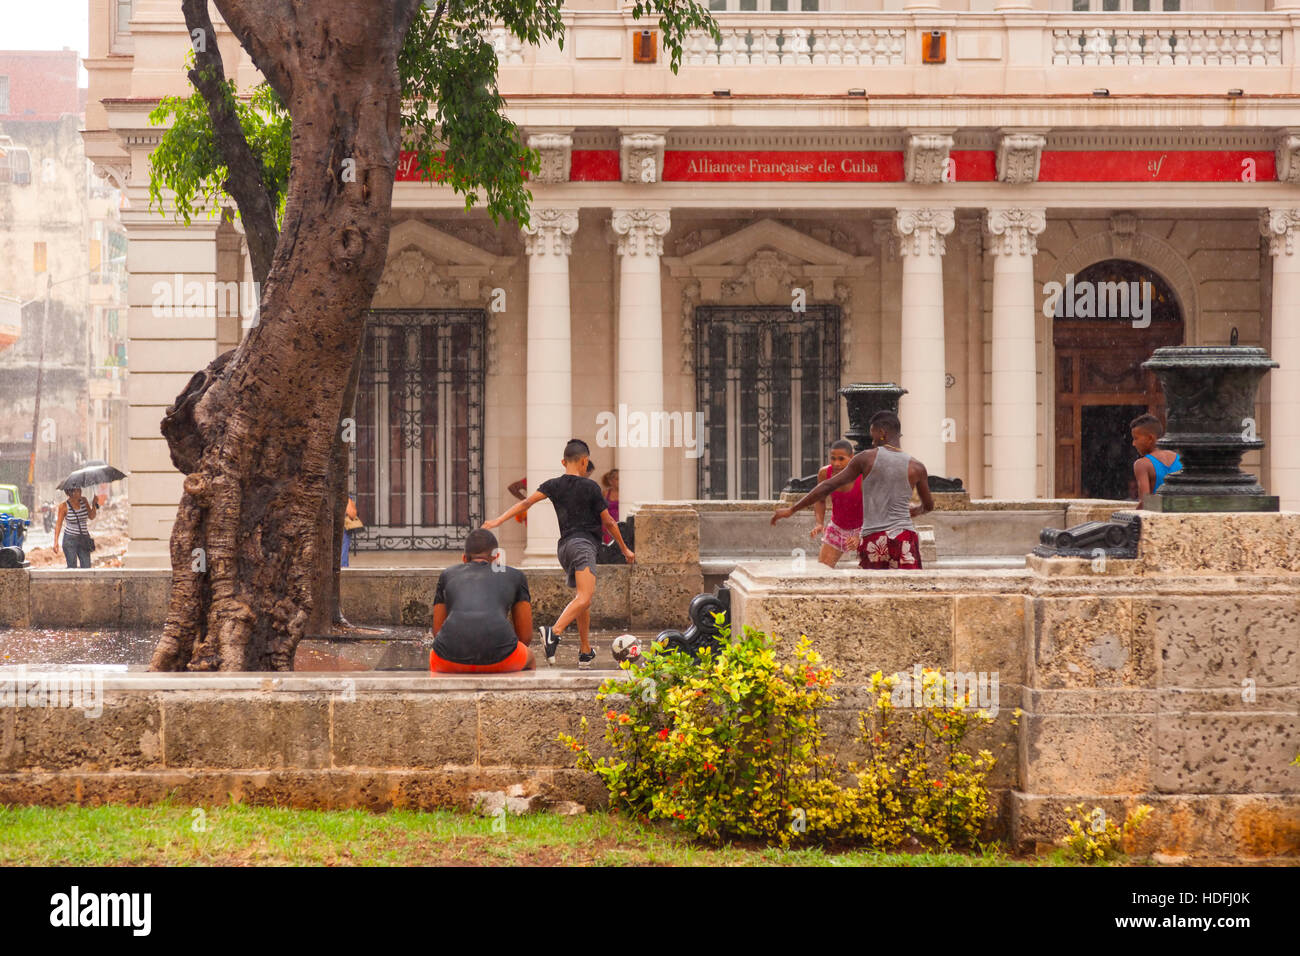 Les adolescents jouent au soccer (football) dans la pluie le long de Paseo de Marti dans la Vieille Havane, Cuba. Banque D'Images